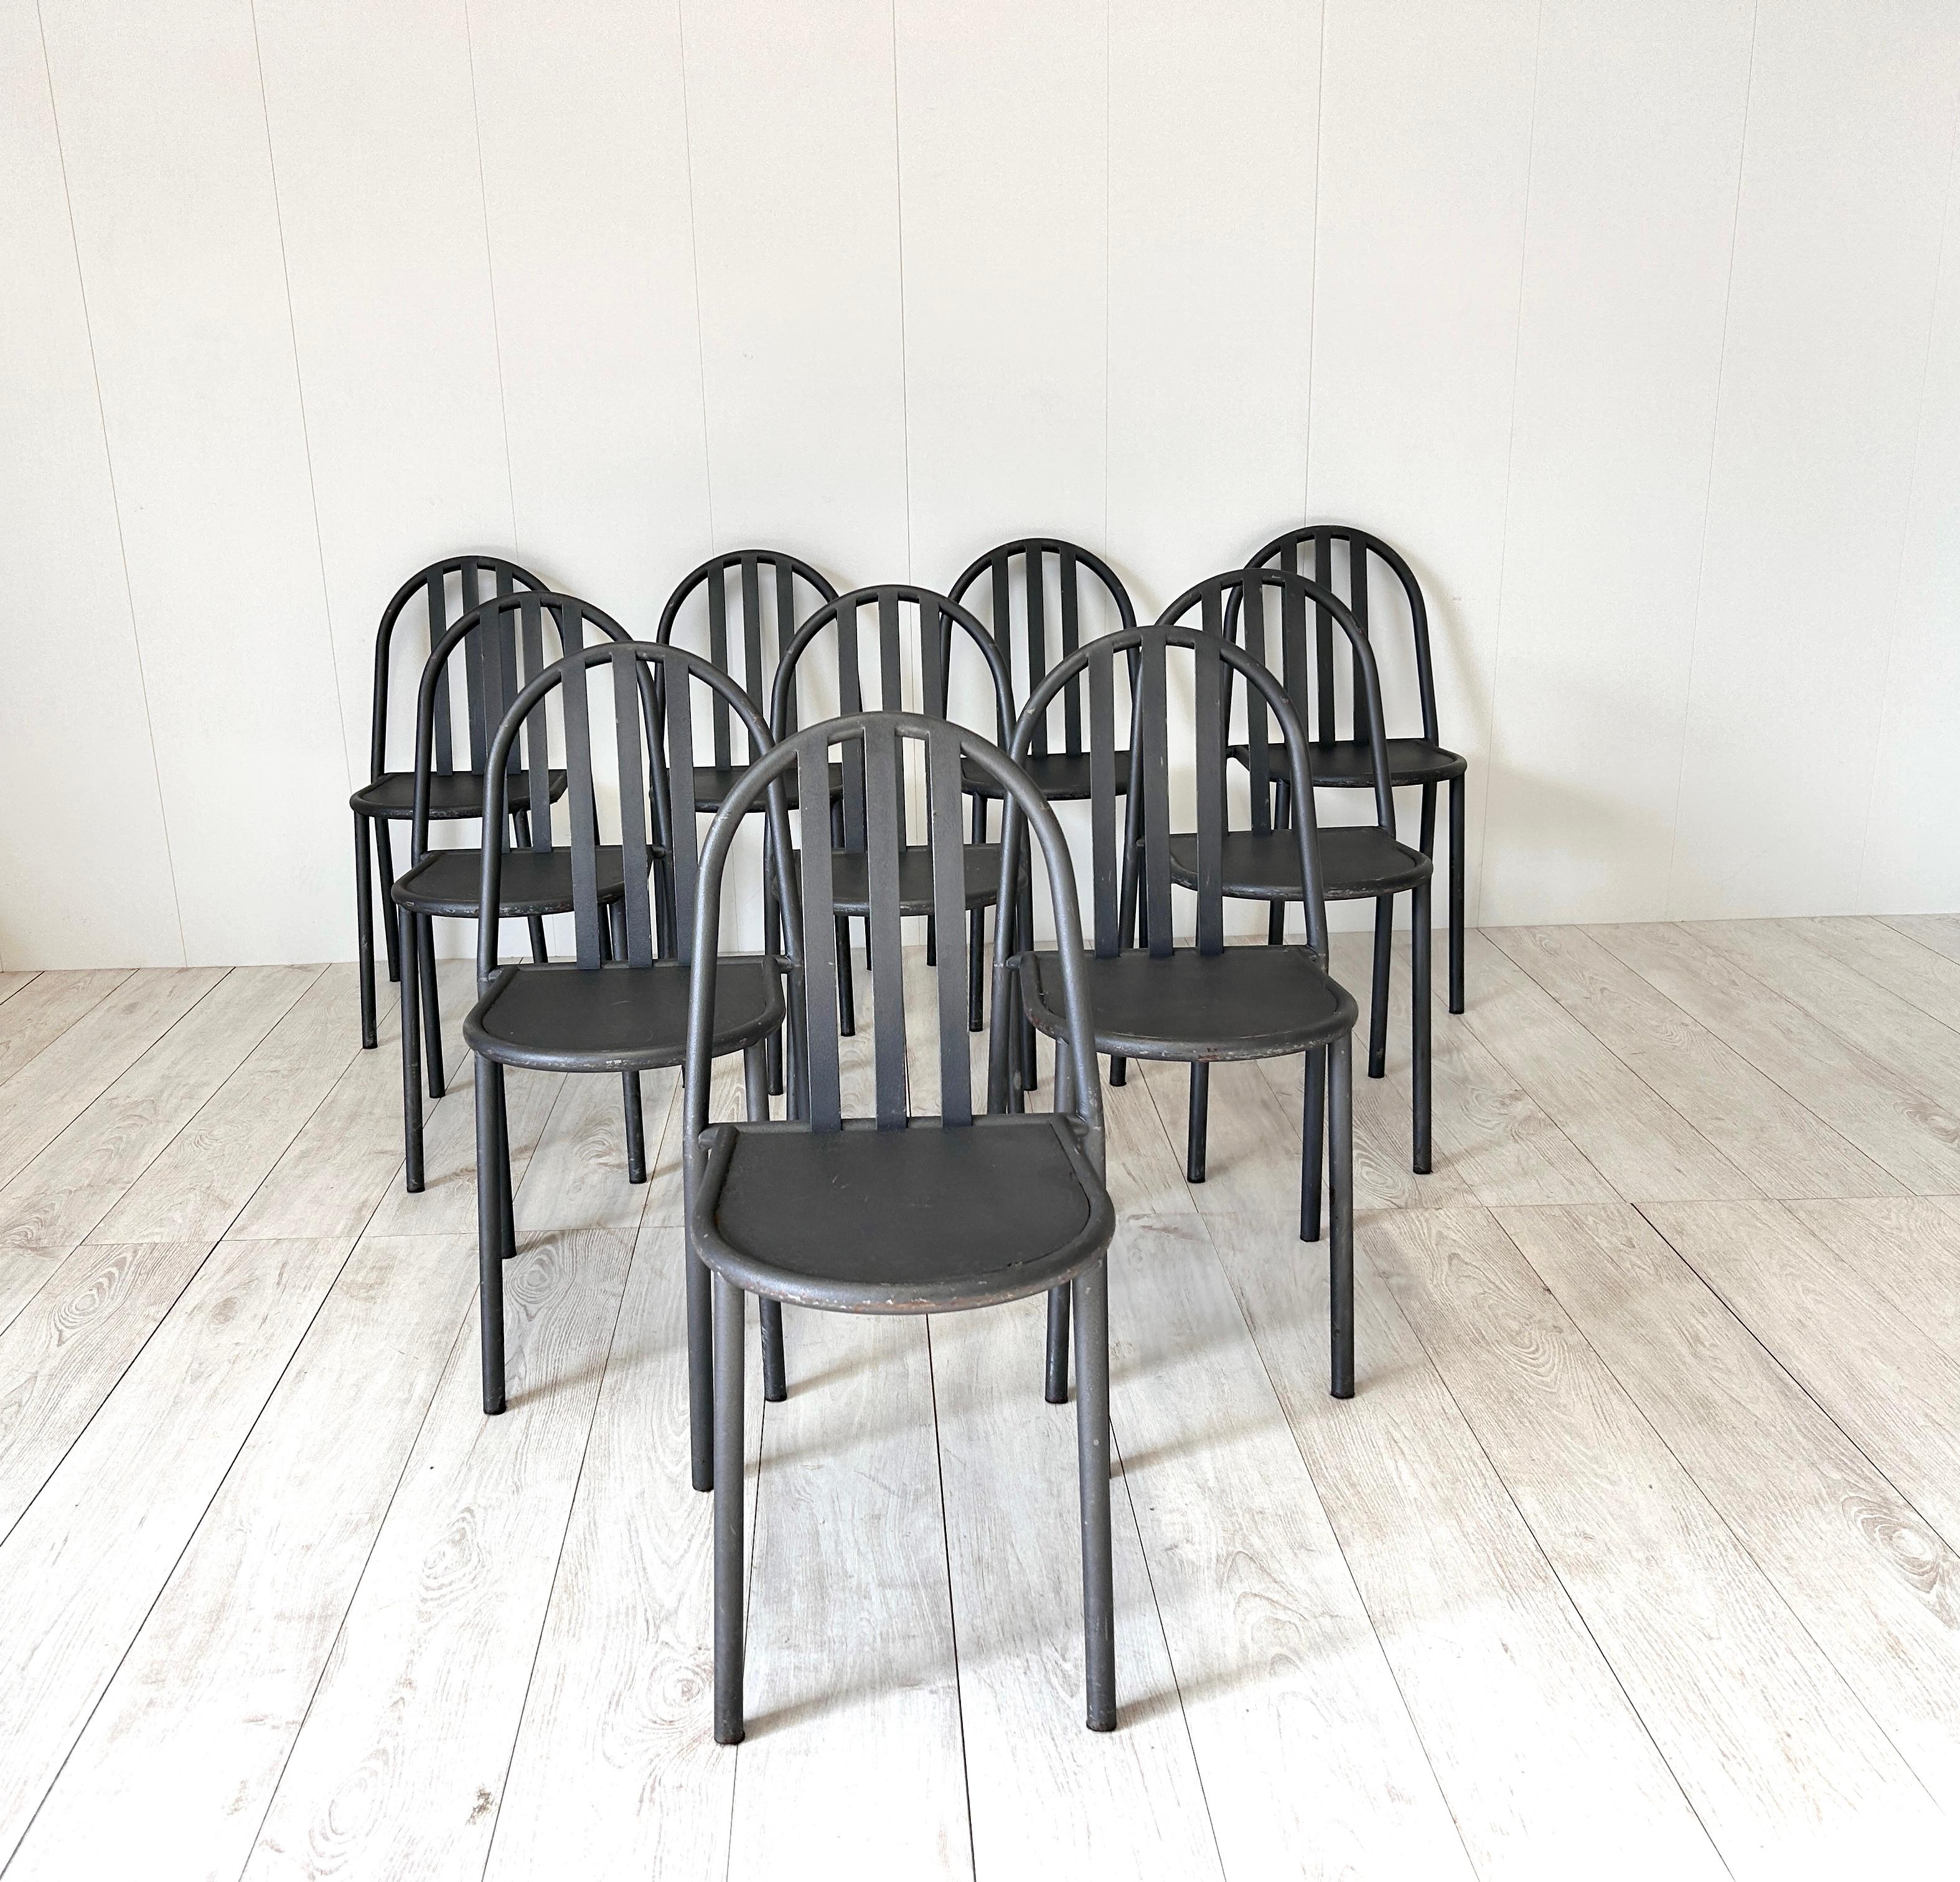 Set di 10 sedie color grigio scuro in ferro disegnate da Robert Mallet-Steven
Ideale per un ambiente stile industrial o utilizzabile all'esterno, come sedie da giardino

Buone condizioni generali, piccoli segni di usura.

